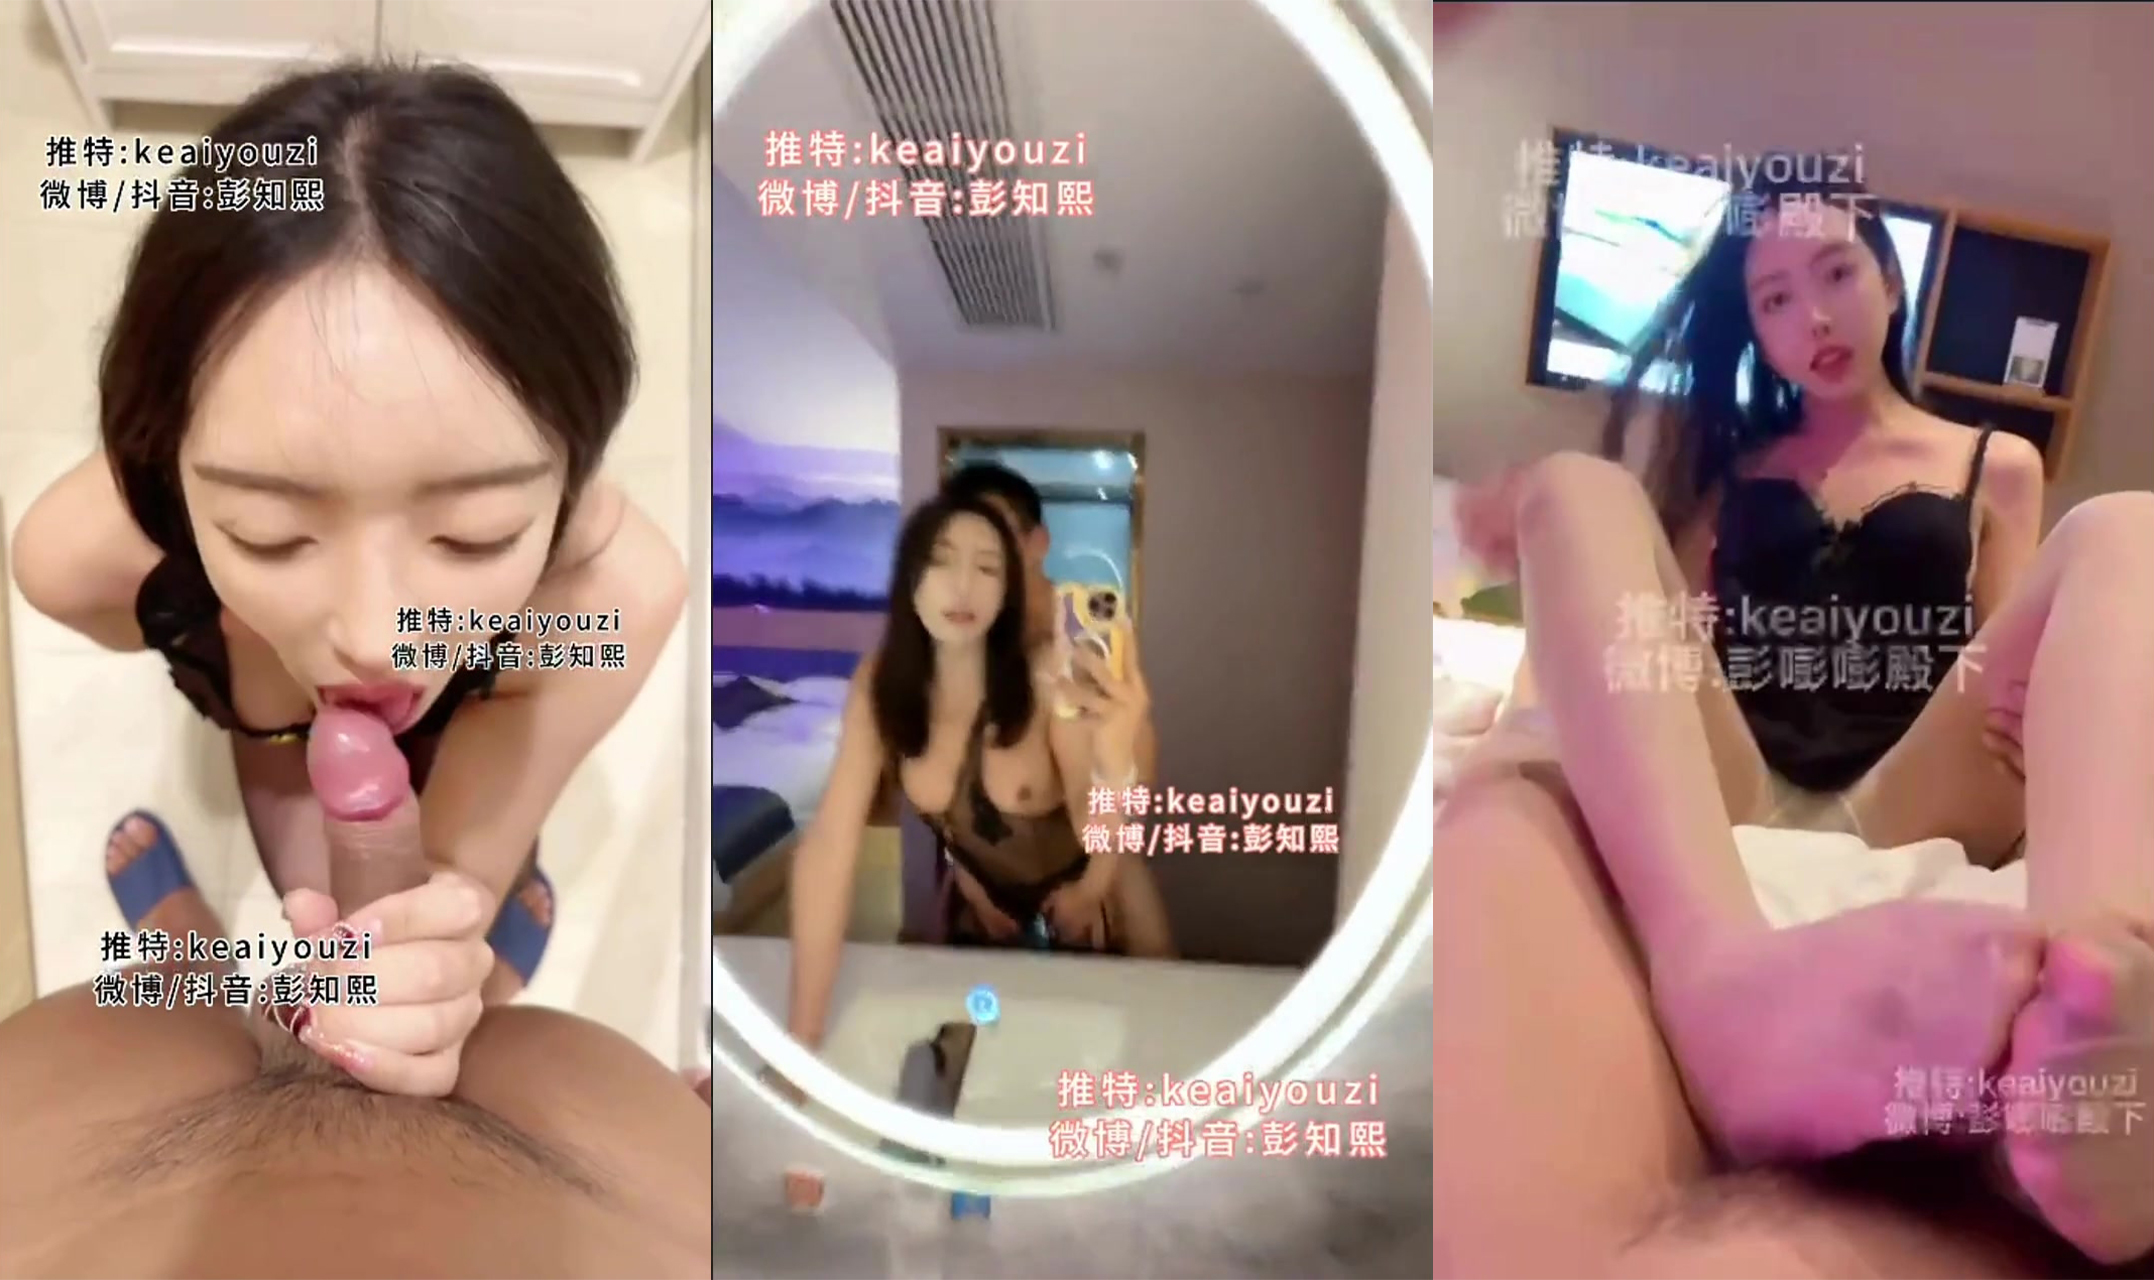 TS "Peng Zhixi (Youzi)" đã tổ chức một bữa tiệc KTV với các bạn cùng lớp đại học của cô, người bạn cùng phòng mà cô đã nhiều năm không gặp đã nhìn thấy hành vi thú tính của cô và hai chàng trai đã thực sự bú vú tại KTV.